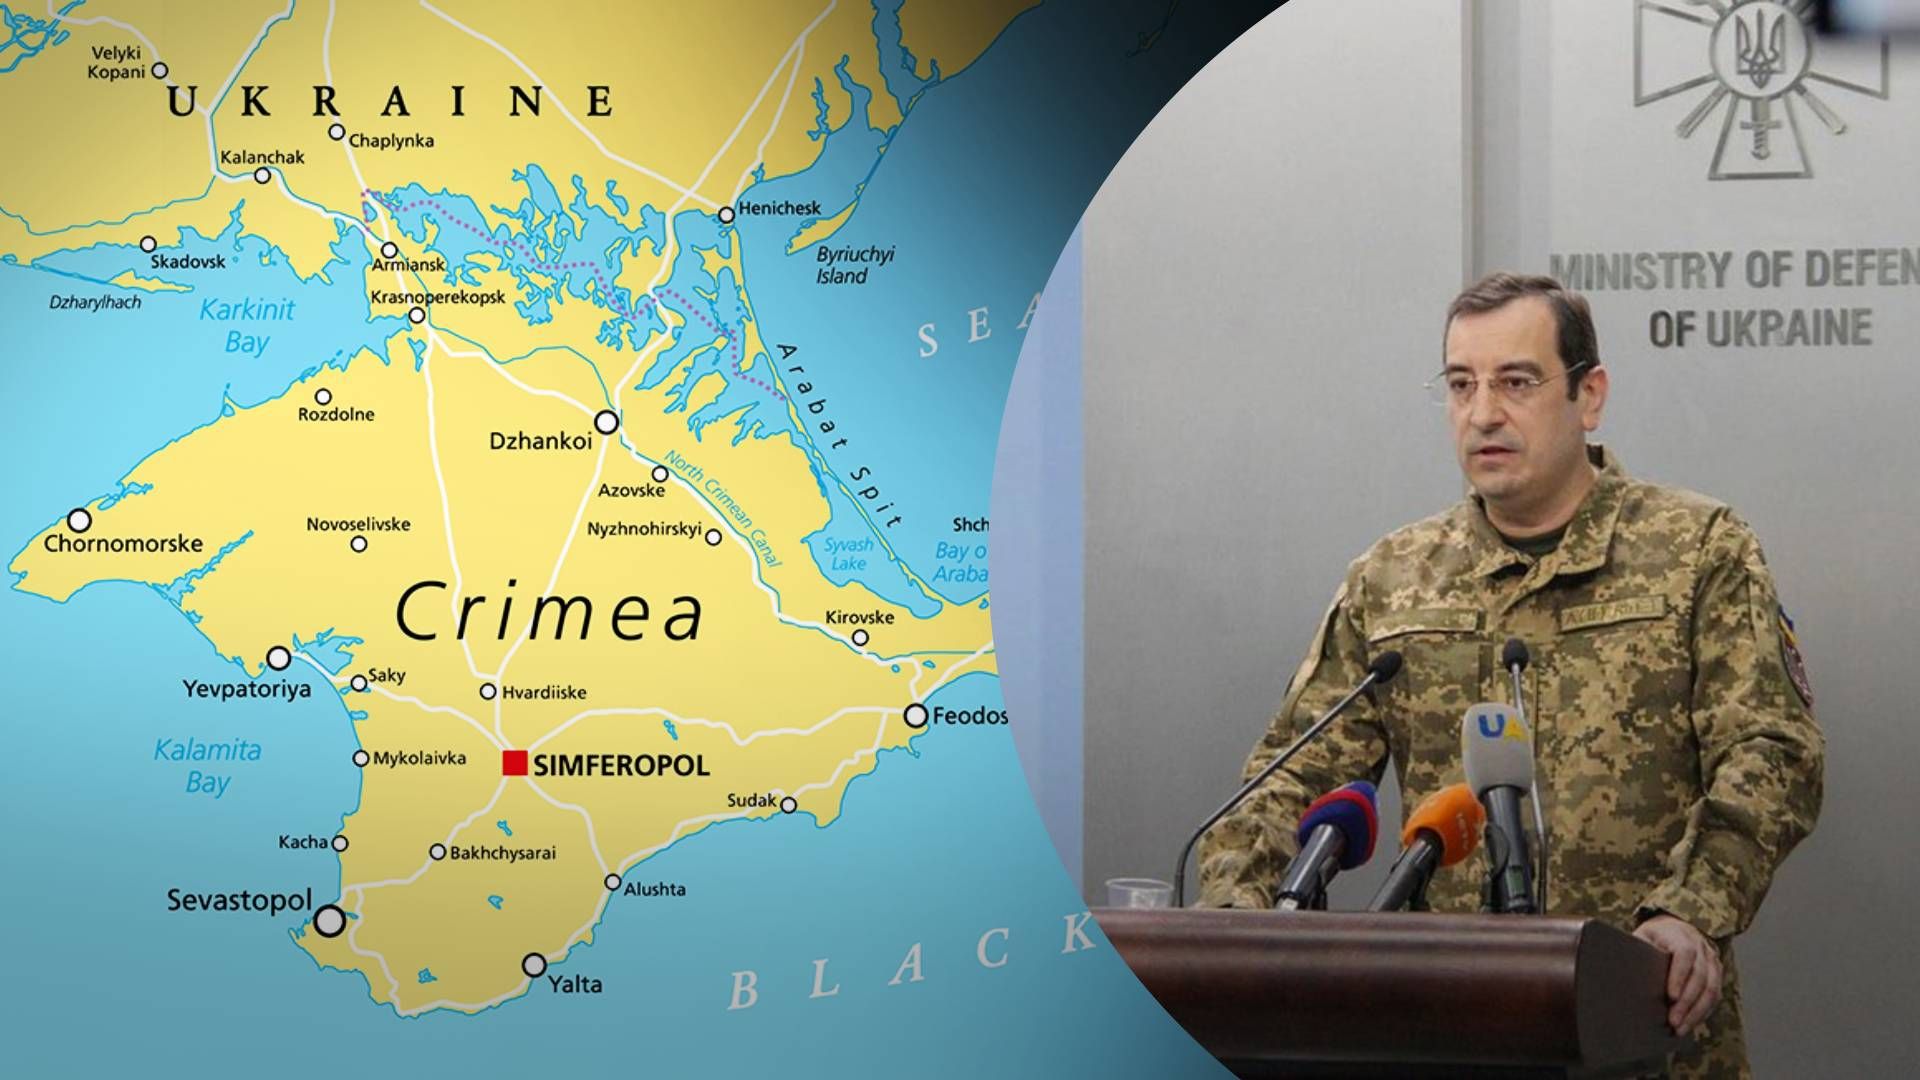 Окупаційне угруповання в Криму треба знищити - 24 Канал